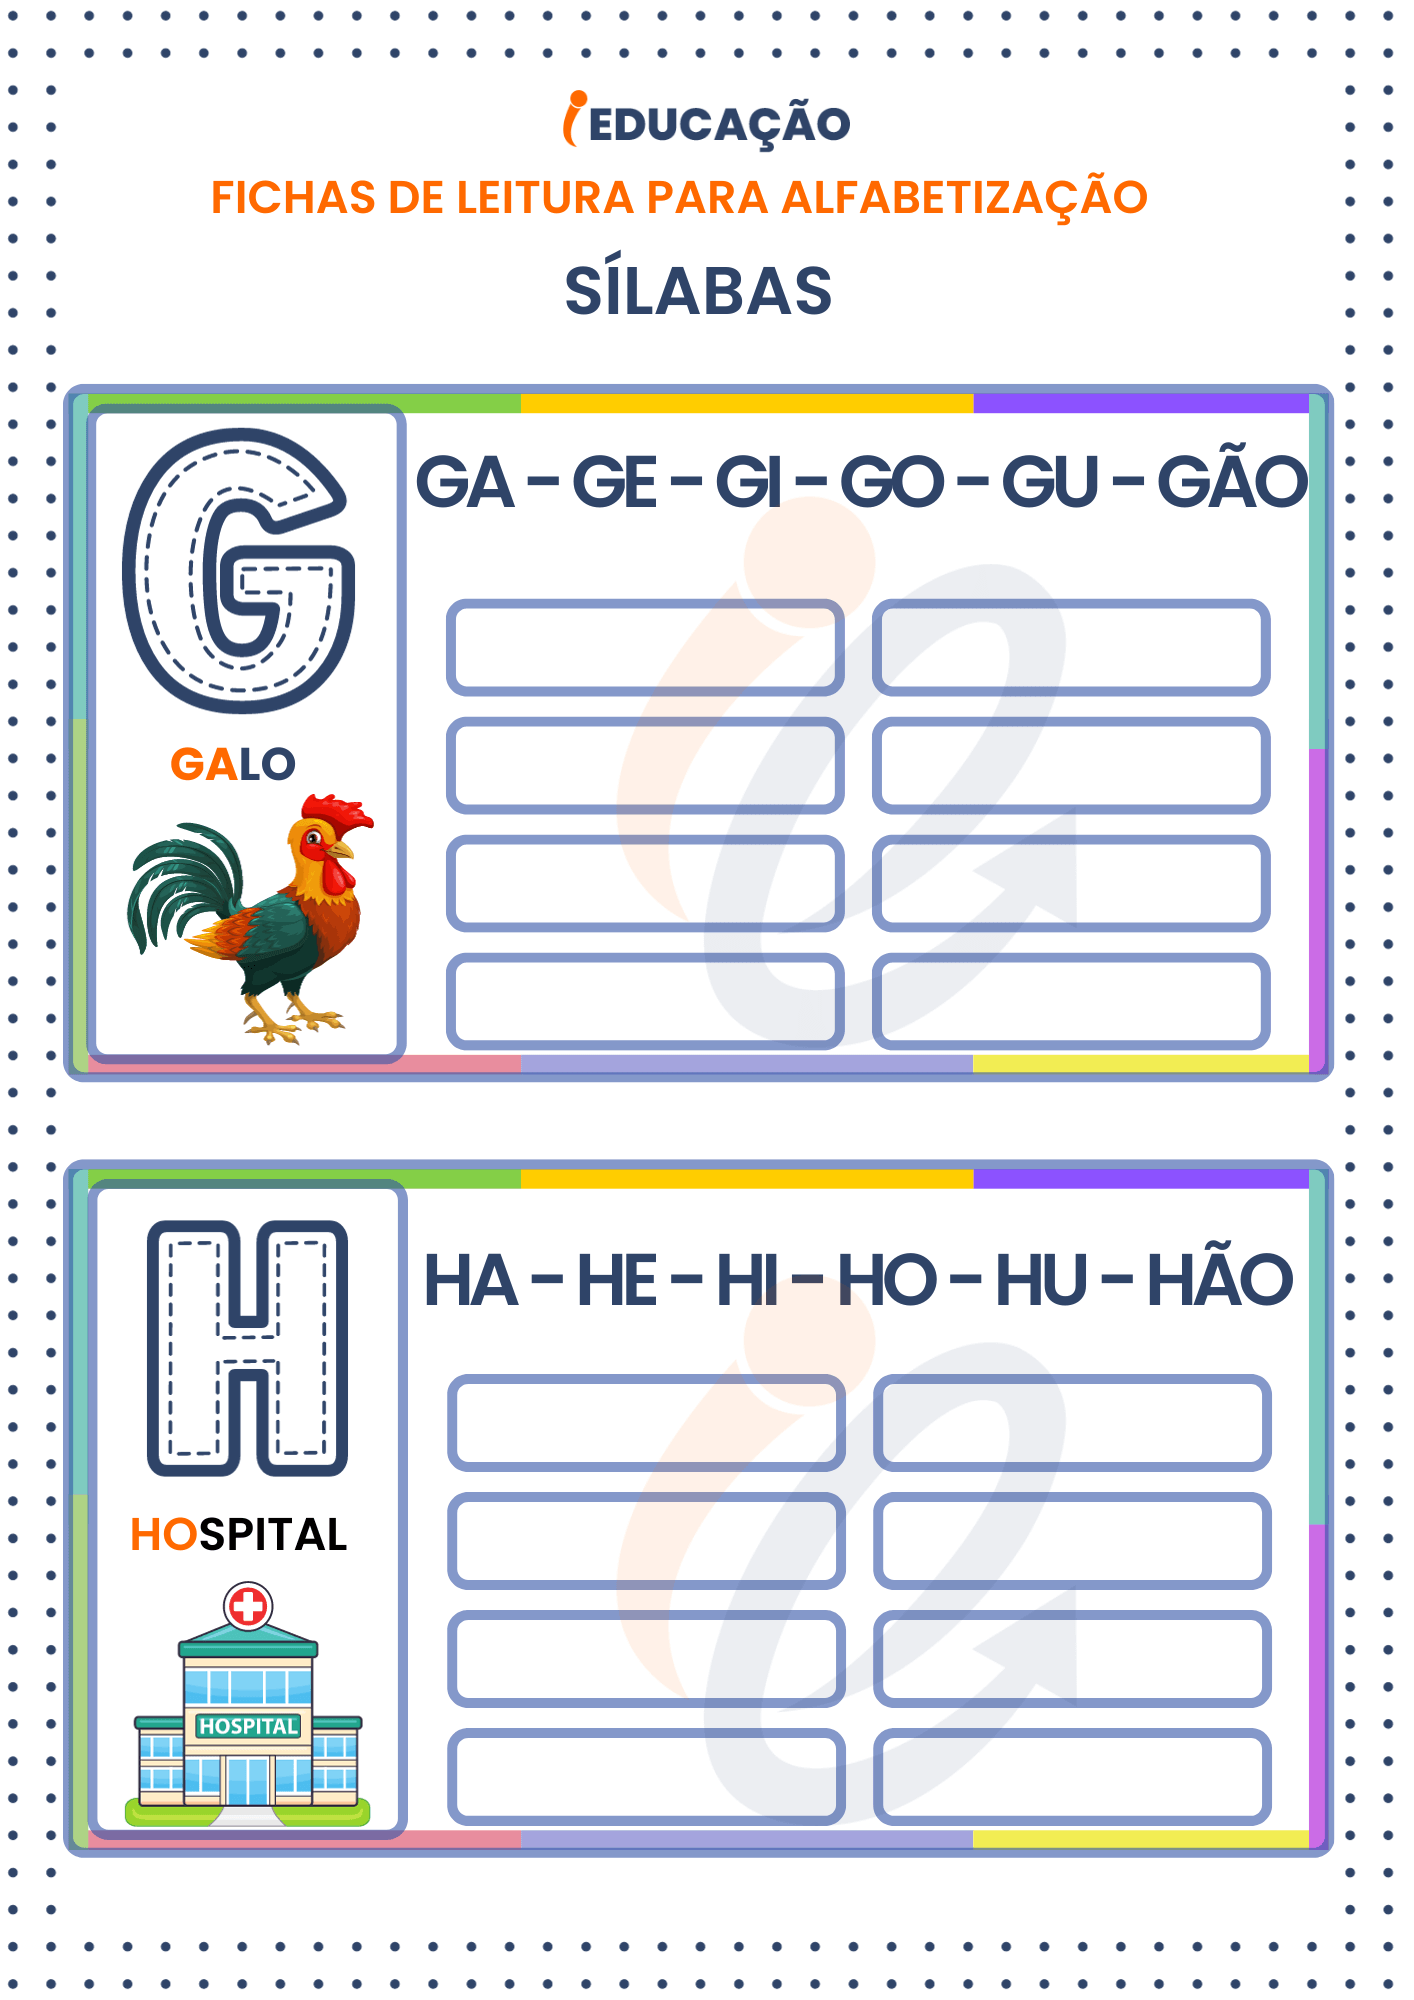 Fichas de Leitura Sílabas para Alfabetização: Sílabas das letras g e h